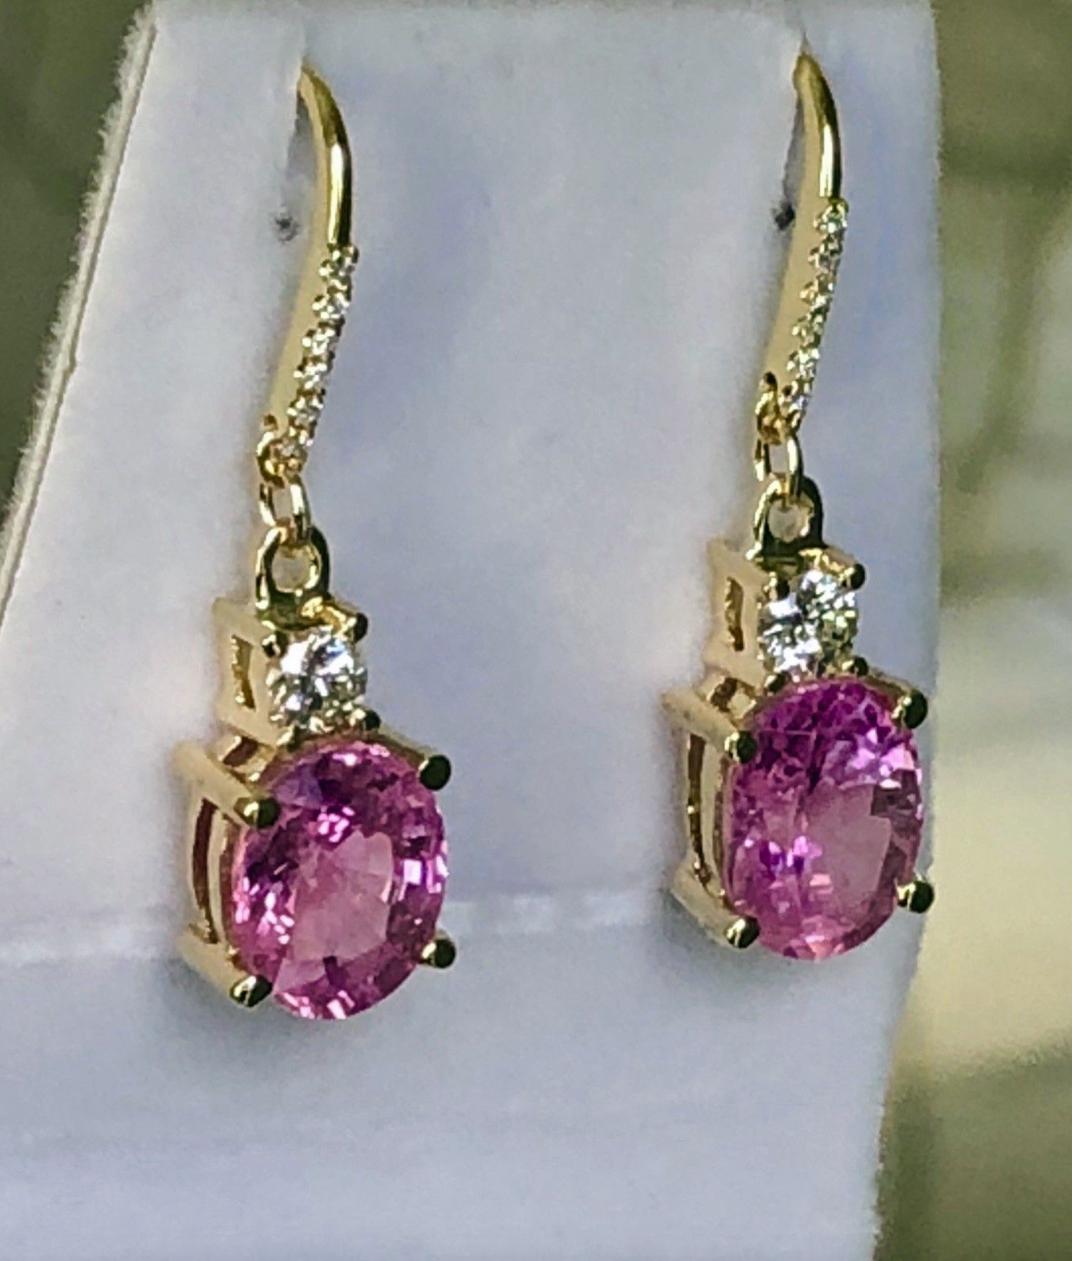 Ein brillantes Paar 18K Gelbgold Natürliche burmesische rosa Saphire und Diamanten Drop Dangle Earrings.
Die Ohrringe mit zwei rosa Saphiren Gewicht ist 6,75 Karat (Saphire sind lebendige rosa und einfach atemberaubend!! Jeder Saphir ist ca. 3,38